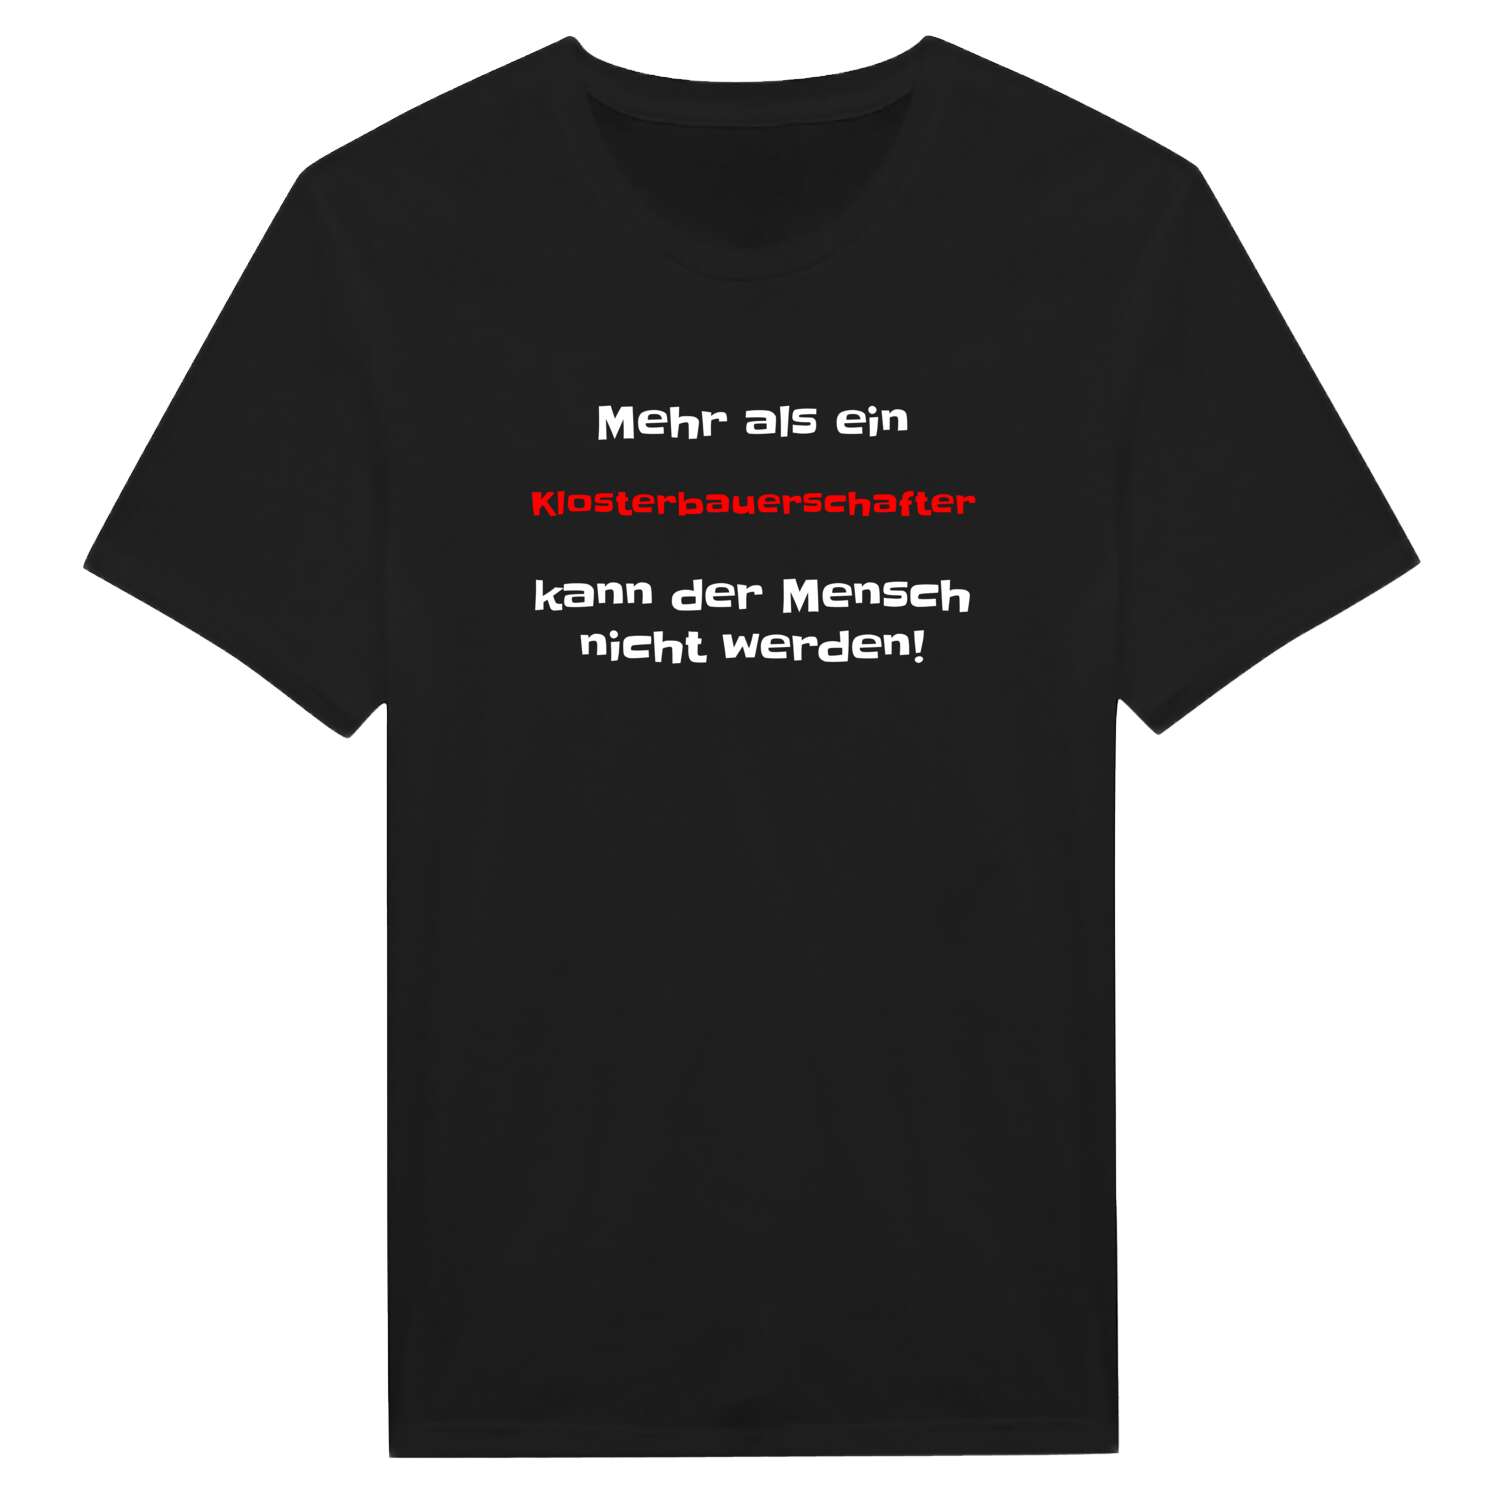 Klosterbauerschaft T-Shirt »Mehr als ein«